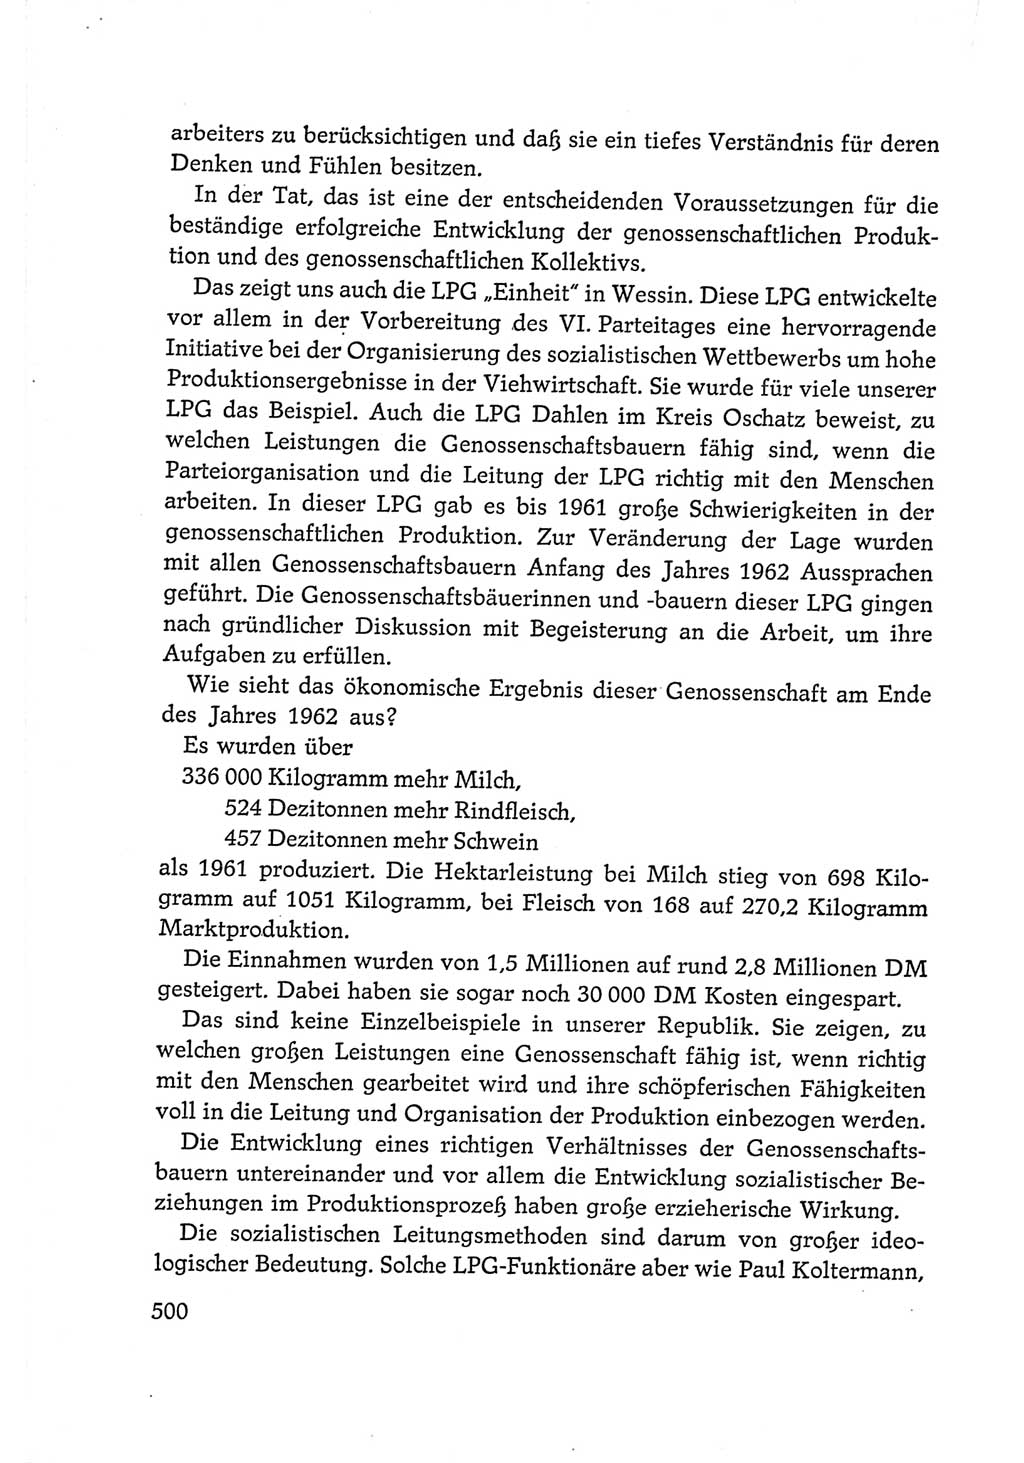 Protokoll der Verhandlungen des Ⅵ. Parteitages der Sozialistischen Einheitspartei Deutschlands (SED) [Deutsche Demokratische Republik (DDR)] 1963, Band Ⅰ, Seite 500 (Prot. Verh. Ⅵ. PT SED DDR 1963, Bd. Ⅰ, S. 500)